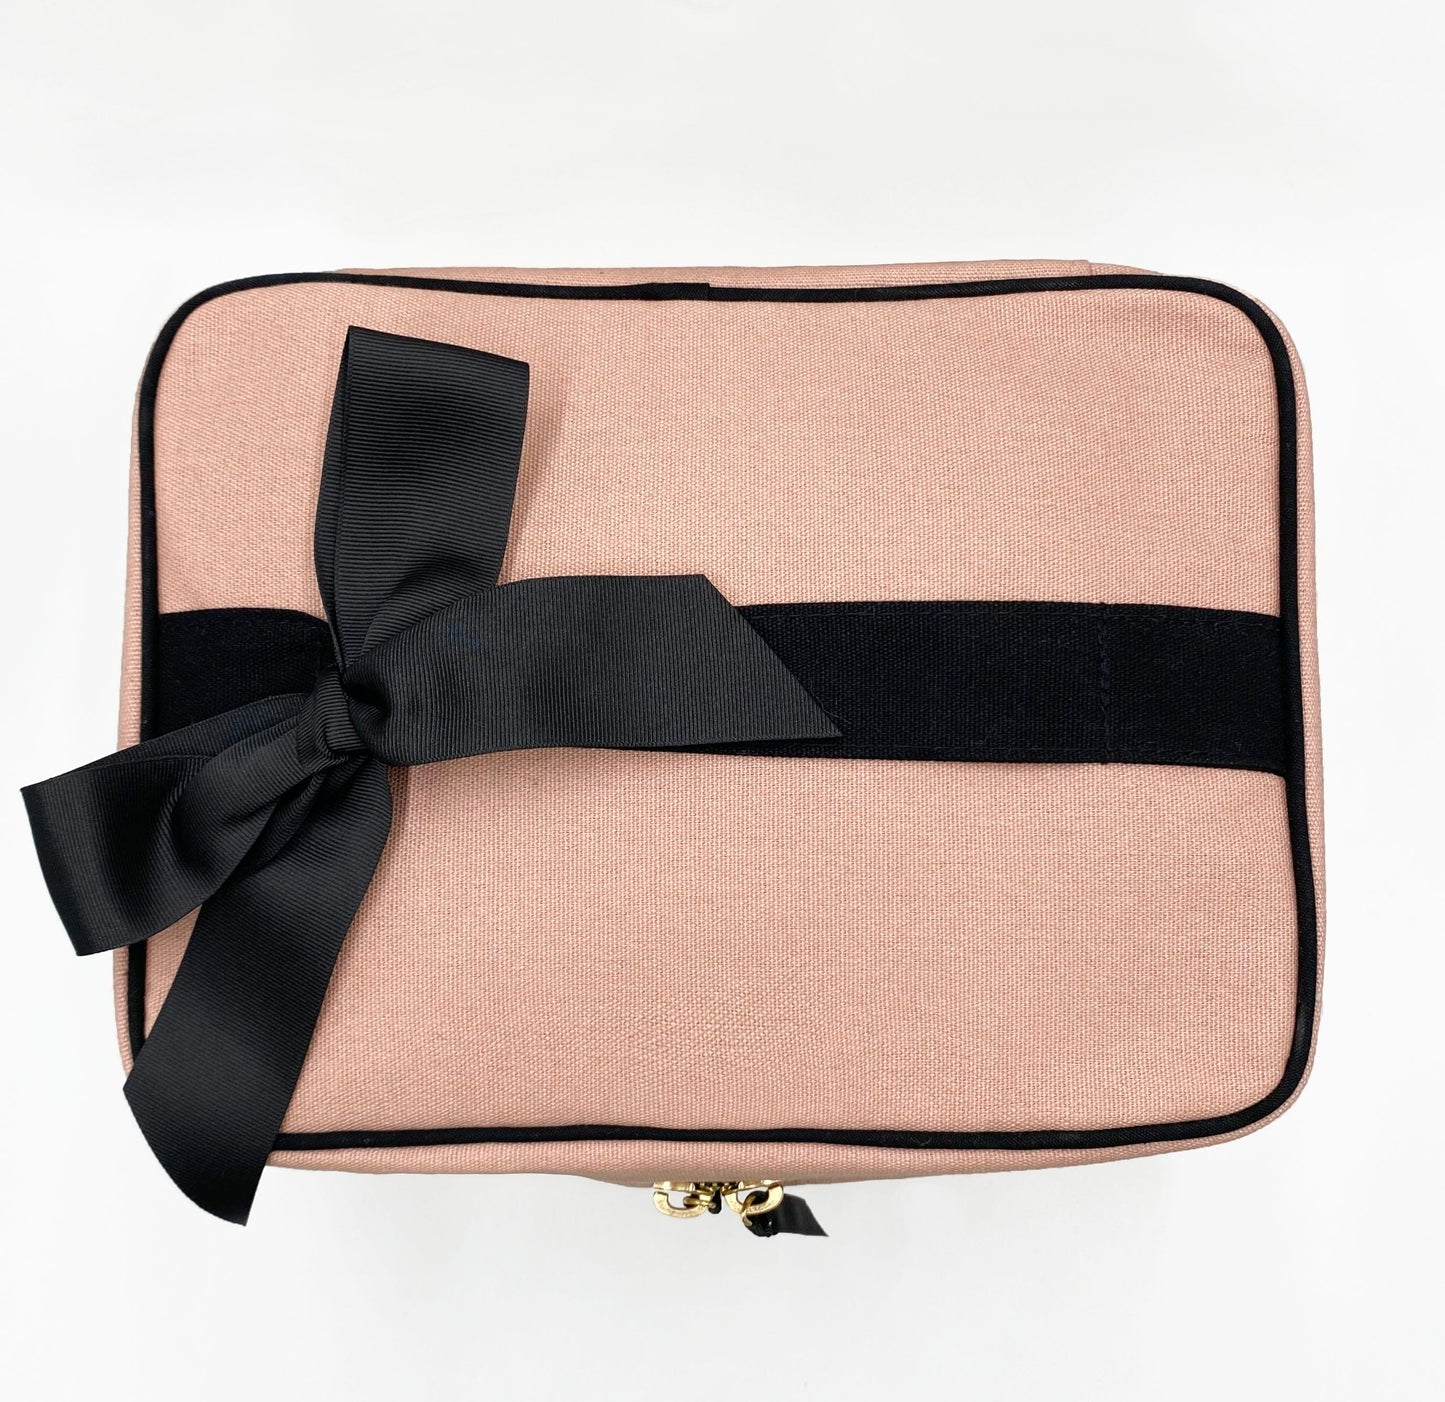 Vanity case Louis Vuitton Pink in Plastic - 34349052